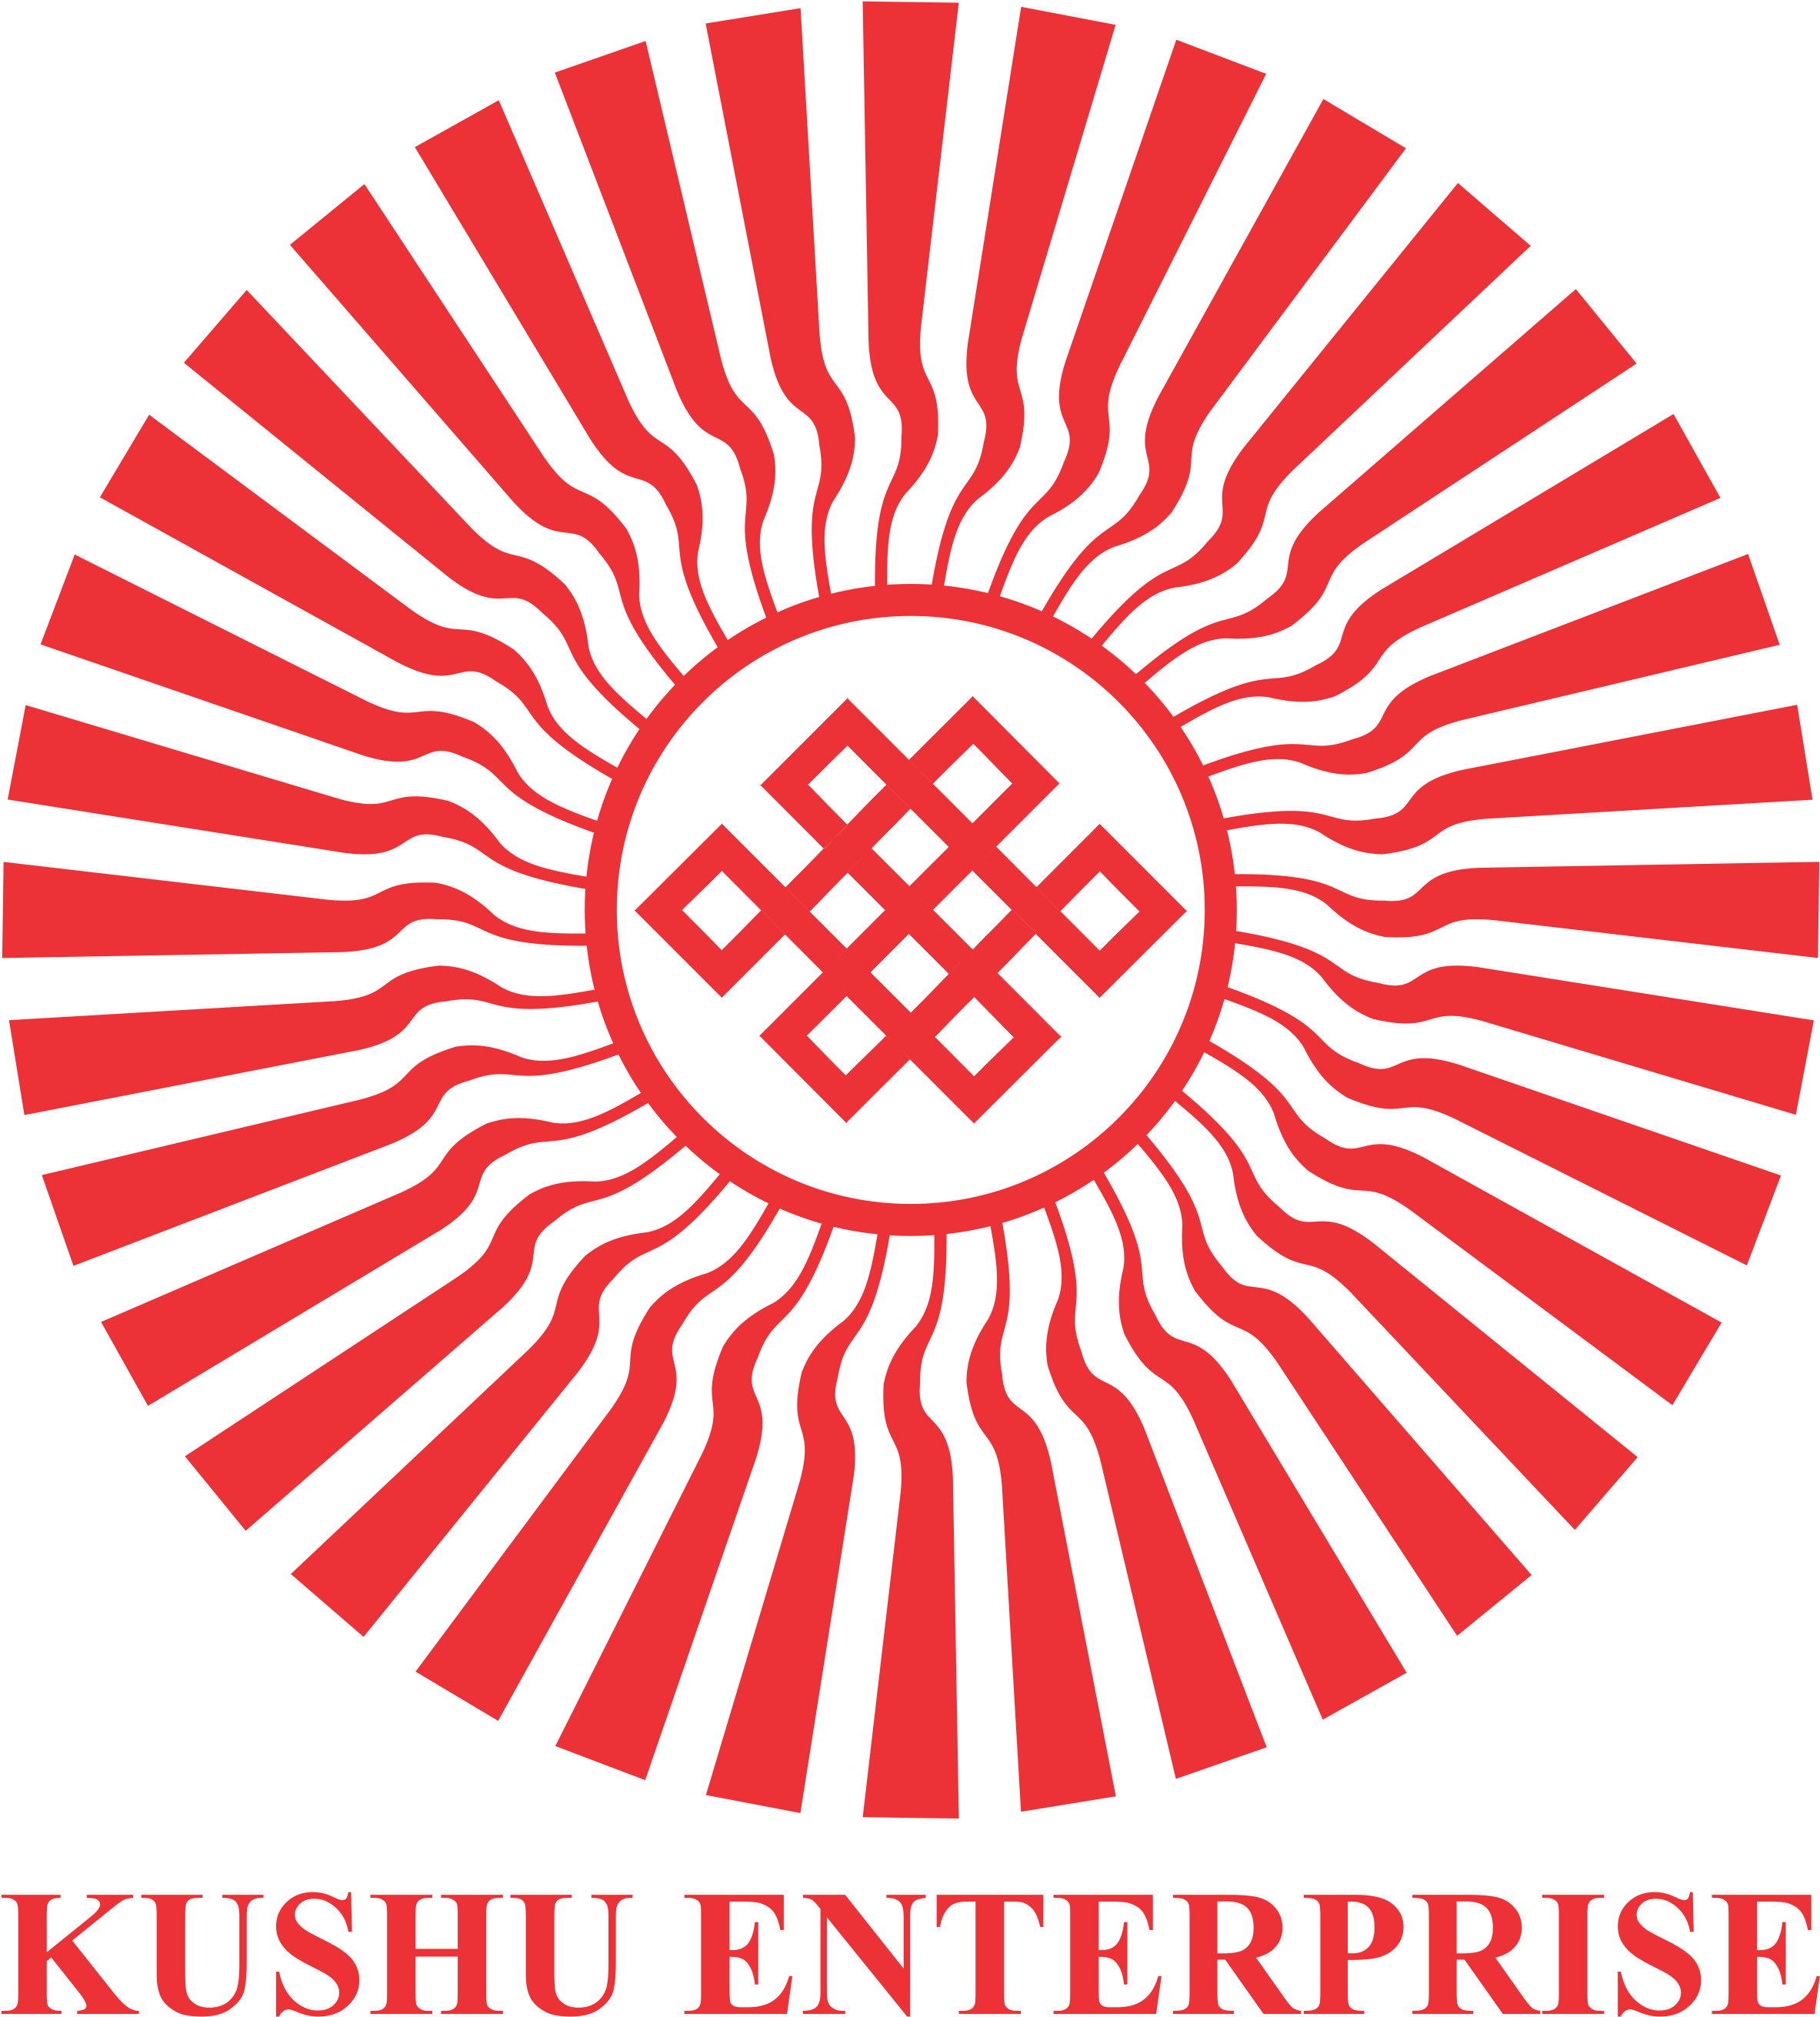 Kushu Enterprise Logo Red 1 - Shambhala Sun (2482x2718), Png Download